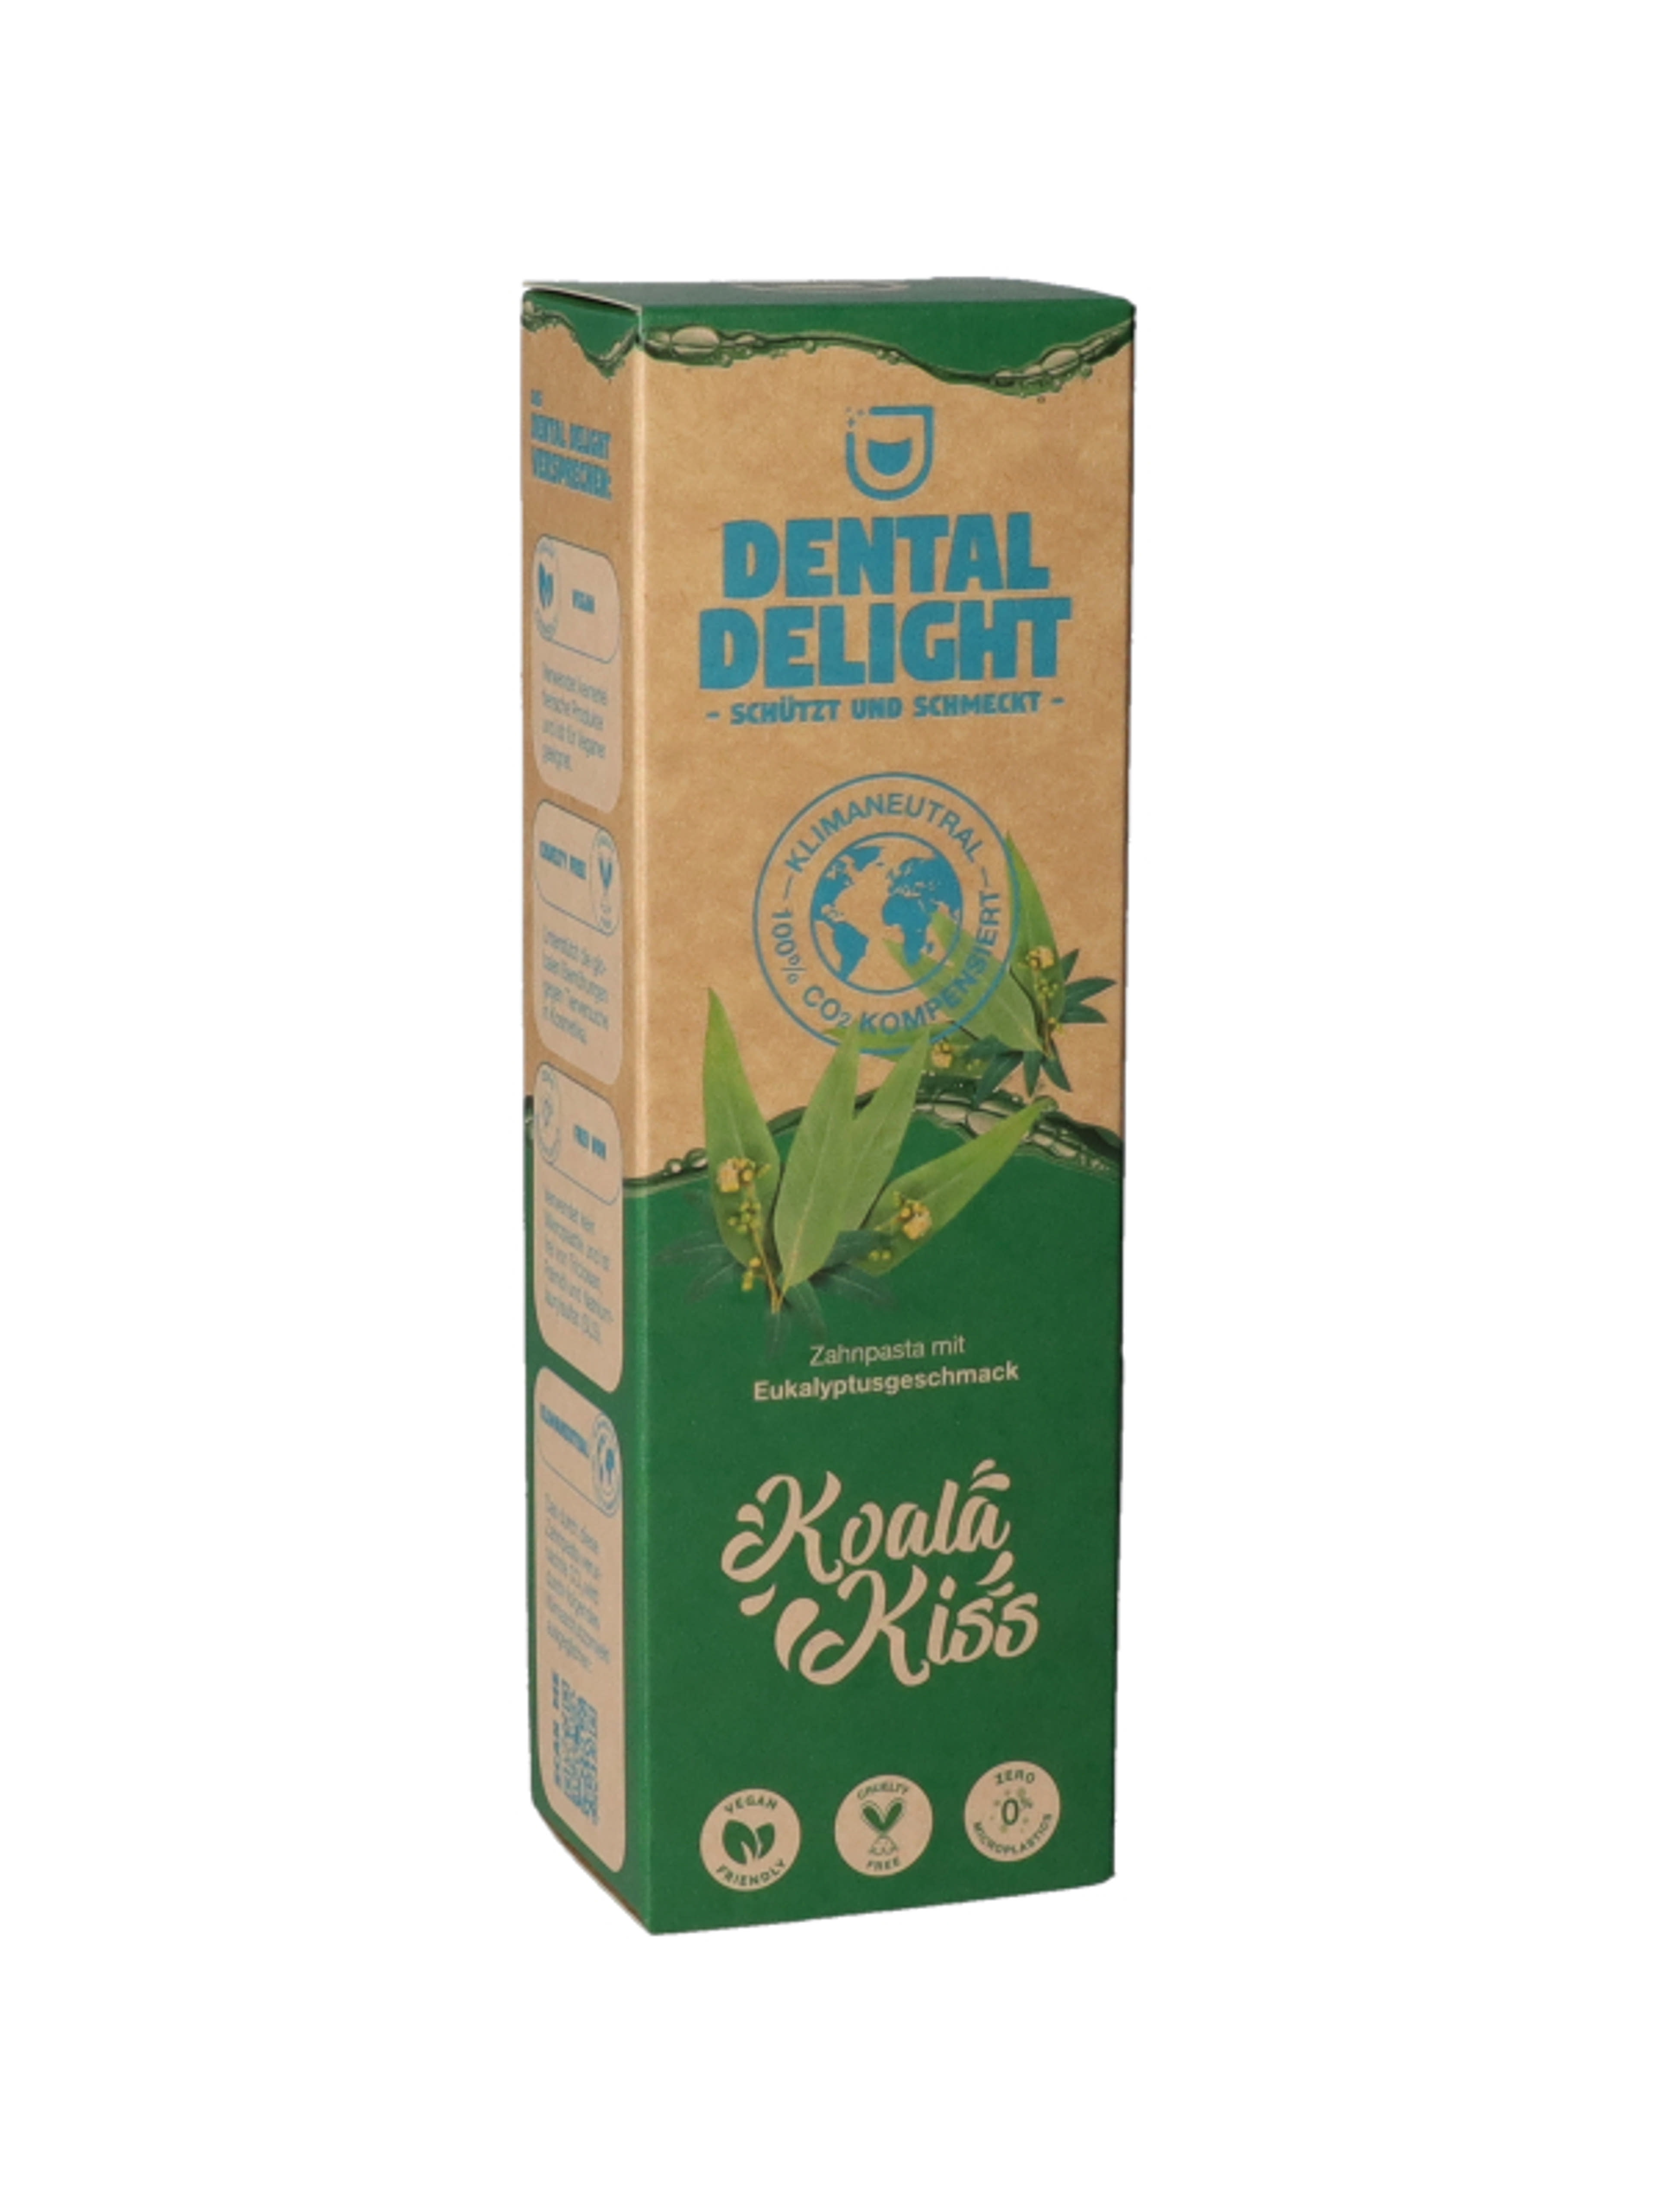 Dental Delight Koala Kiss fogkrém - 75 ml-2